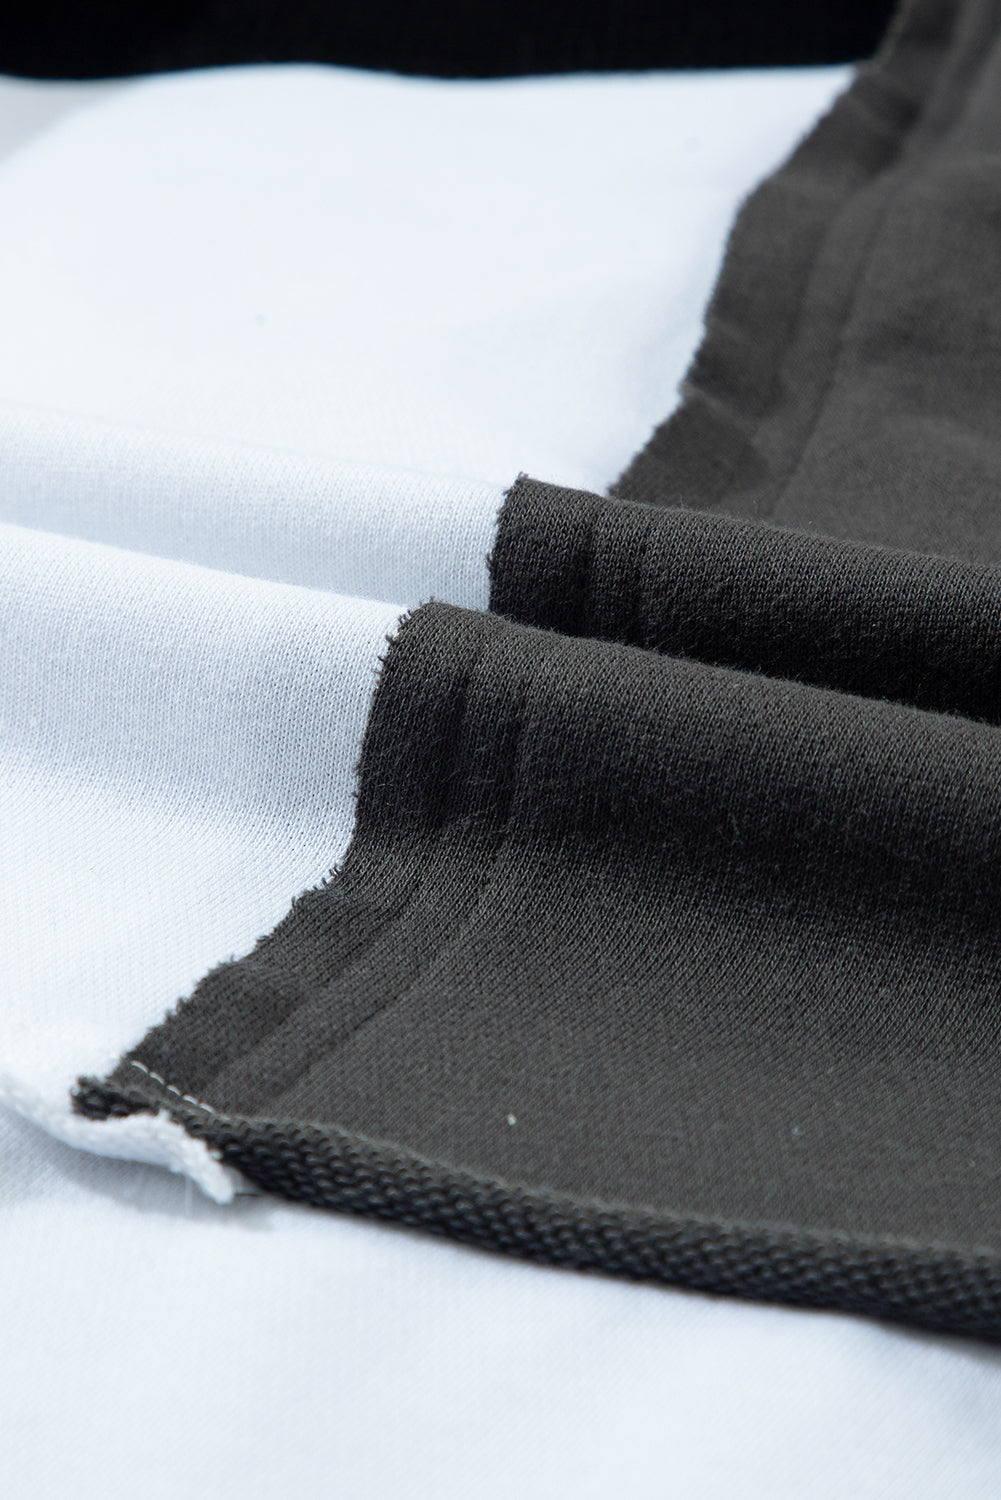 Pulover s kapuco z izpostavljenimi šivi in ​​gumbi v črni barvi